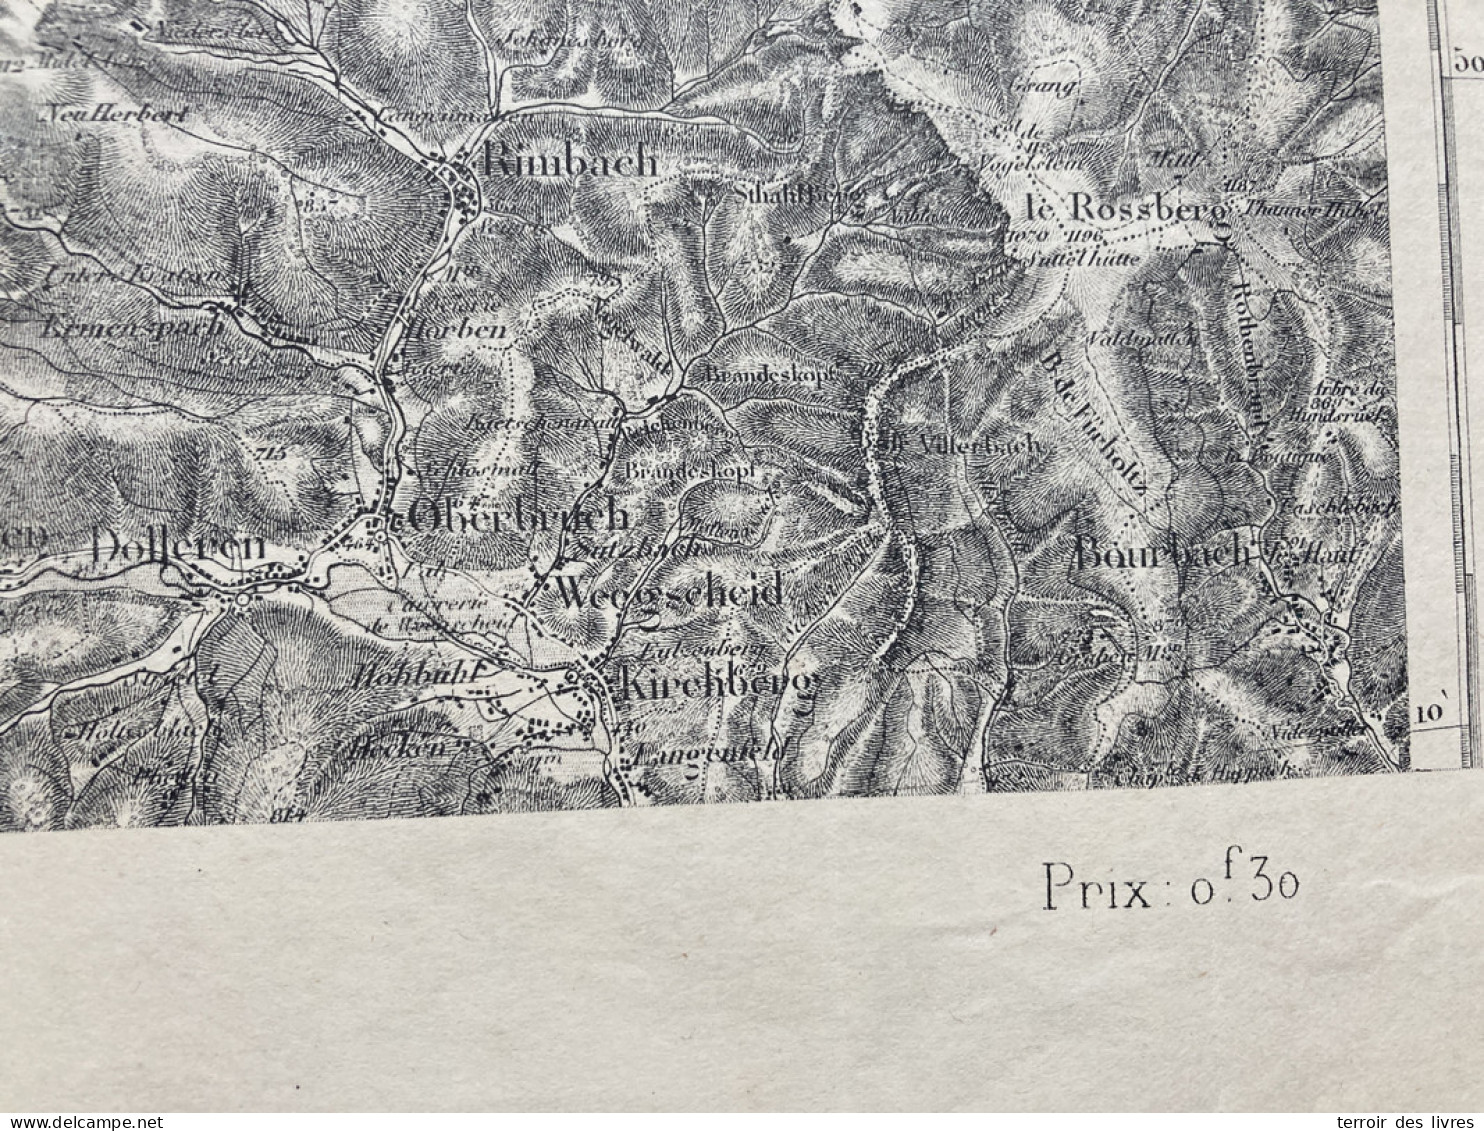 Carte état Major LURE 1896 35x54cm BUSSANG ST-MAURICE-SUR-MOSELLE FRESSE-SUR-MOSELLE LE-MENIL LE-THILLOT VENTRON CHATEAU - Geographical Maps